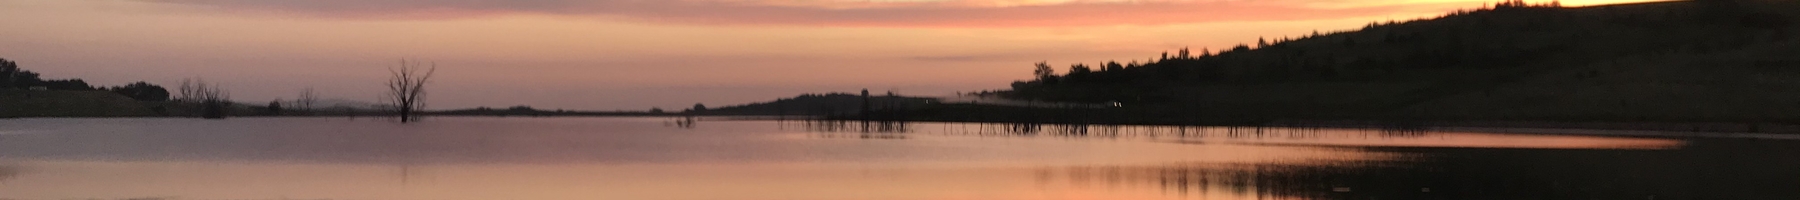 Sunrise reflecting on lake